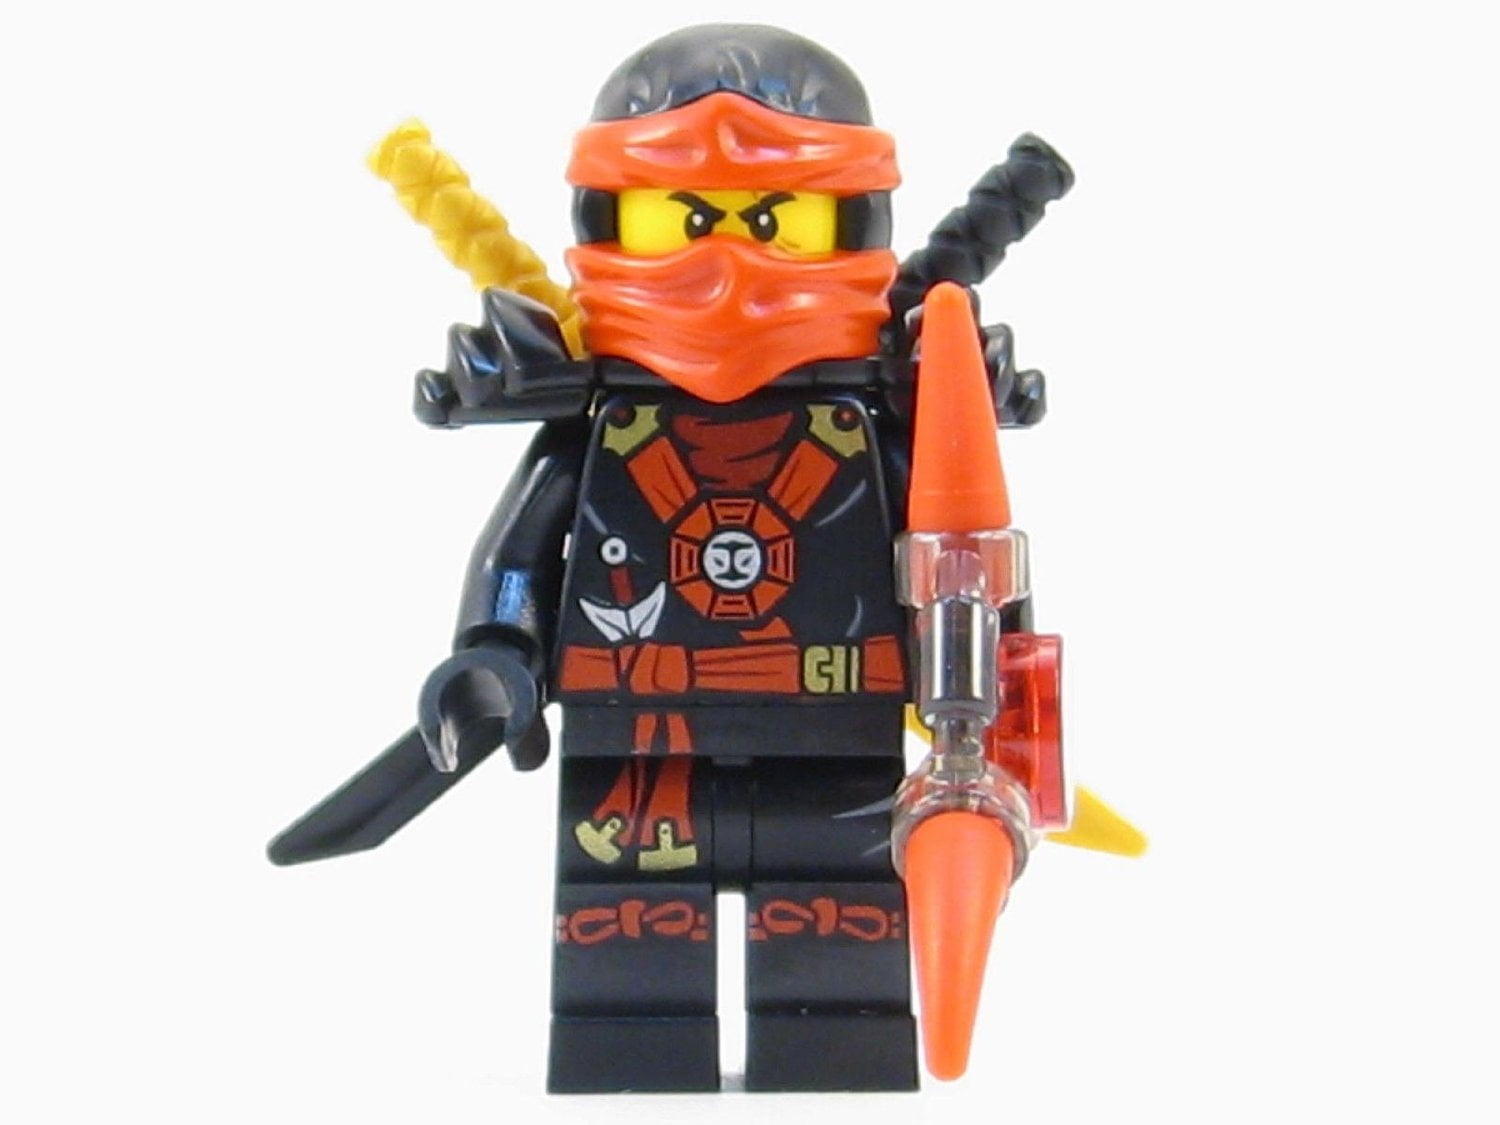 lego baby ninja minifigure